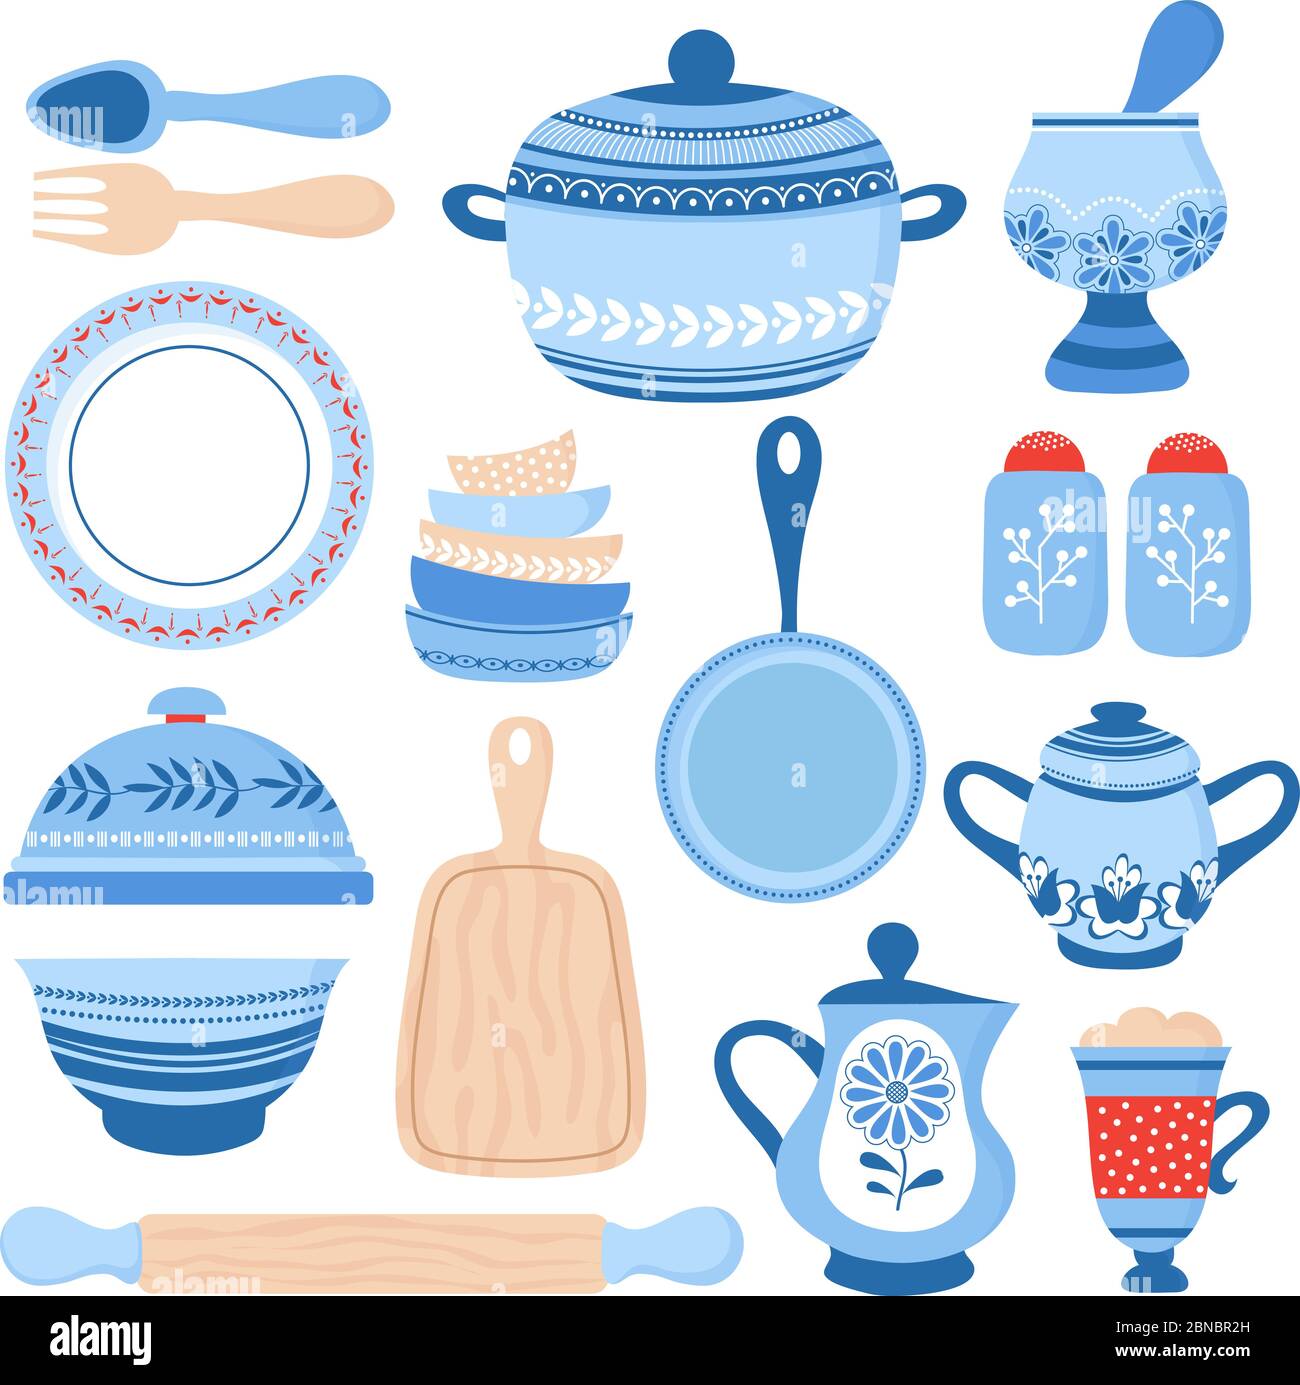 Geschirr Keramik Kochgeschirr. Blaue Porzellanschalen, Teller und Teller. Küchenwerkzeuge Vektorsammlung. Abbildung von Kochgeschirr und Topf, Teller und Kanne Abbildung Stock Vektor